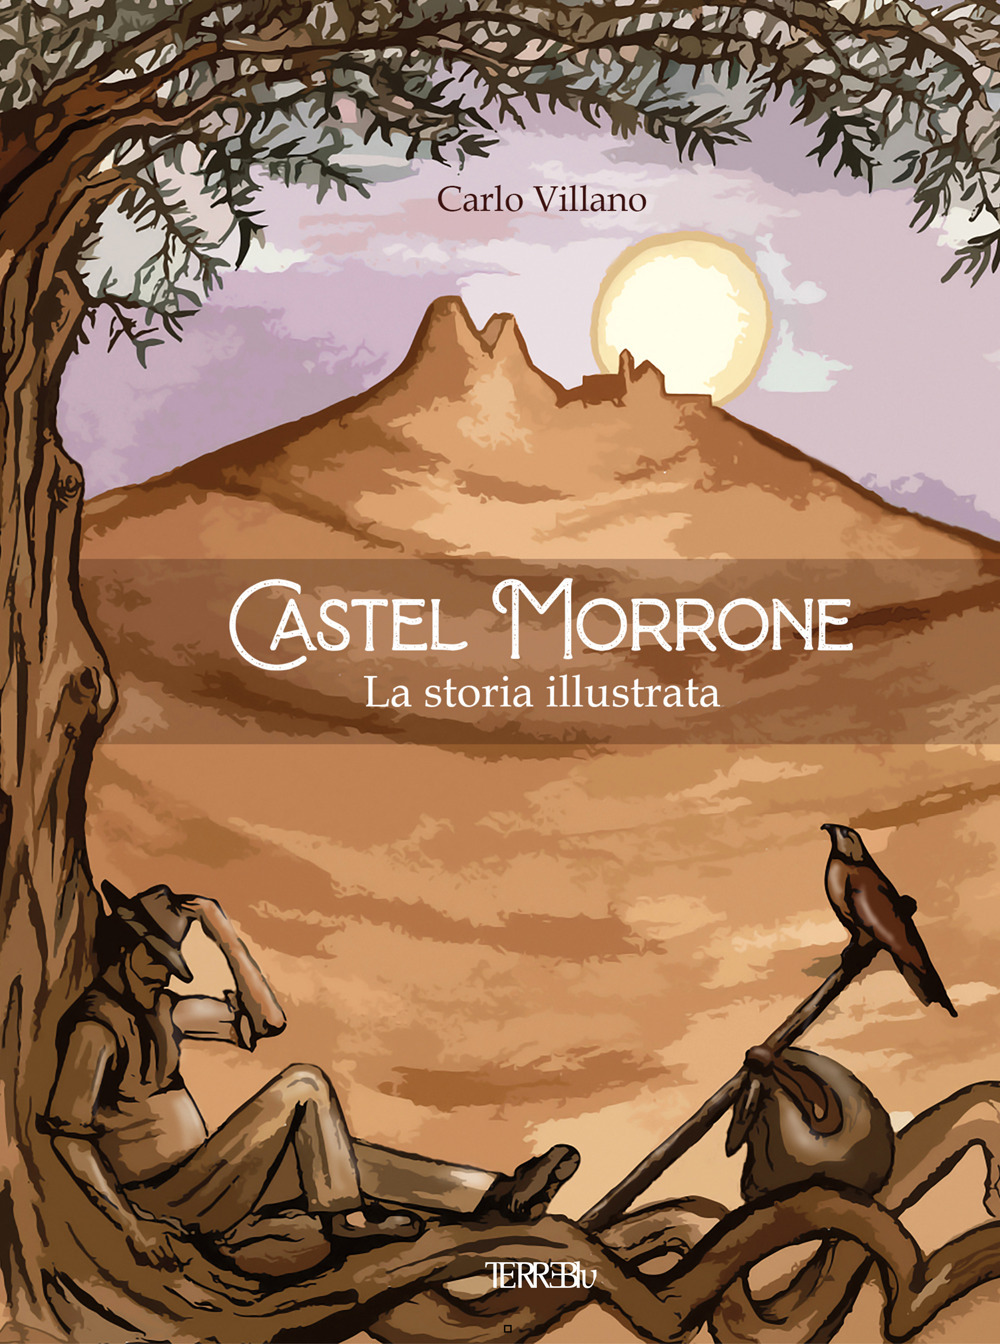 Libri Carlo Villano - Castel Morrone. La Storia Illustrata NUOVO SIGILLATO, EDIZIONE DEL 30/06/2022 SUBITO DISPONIBILE